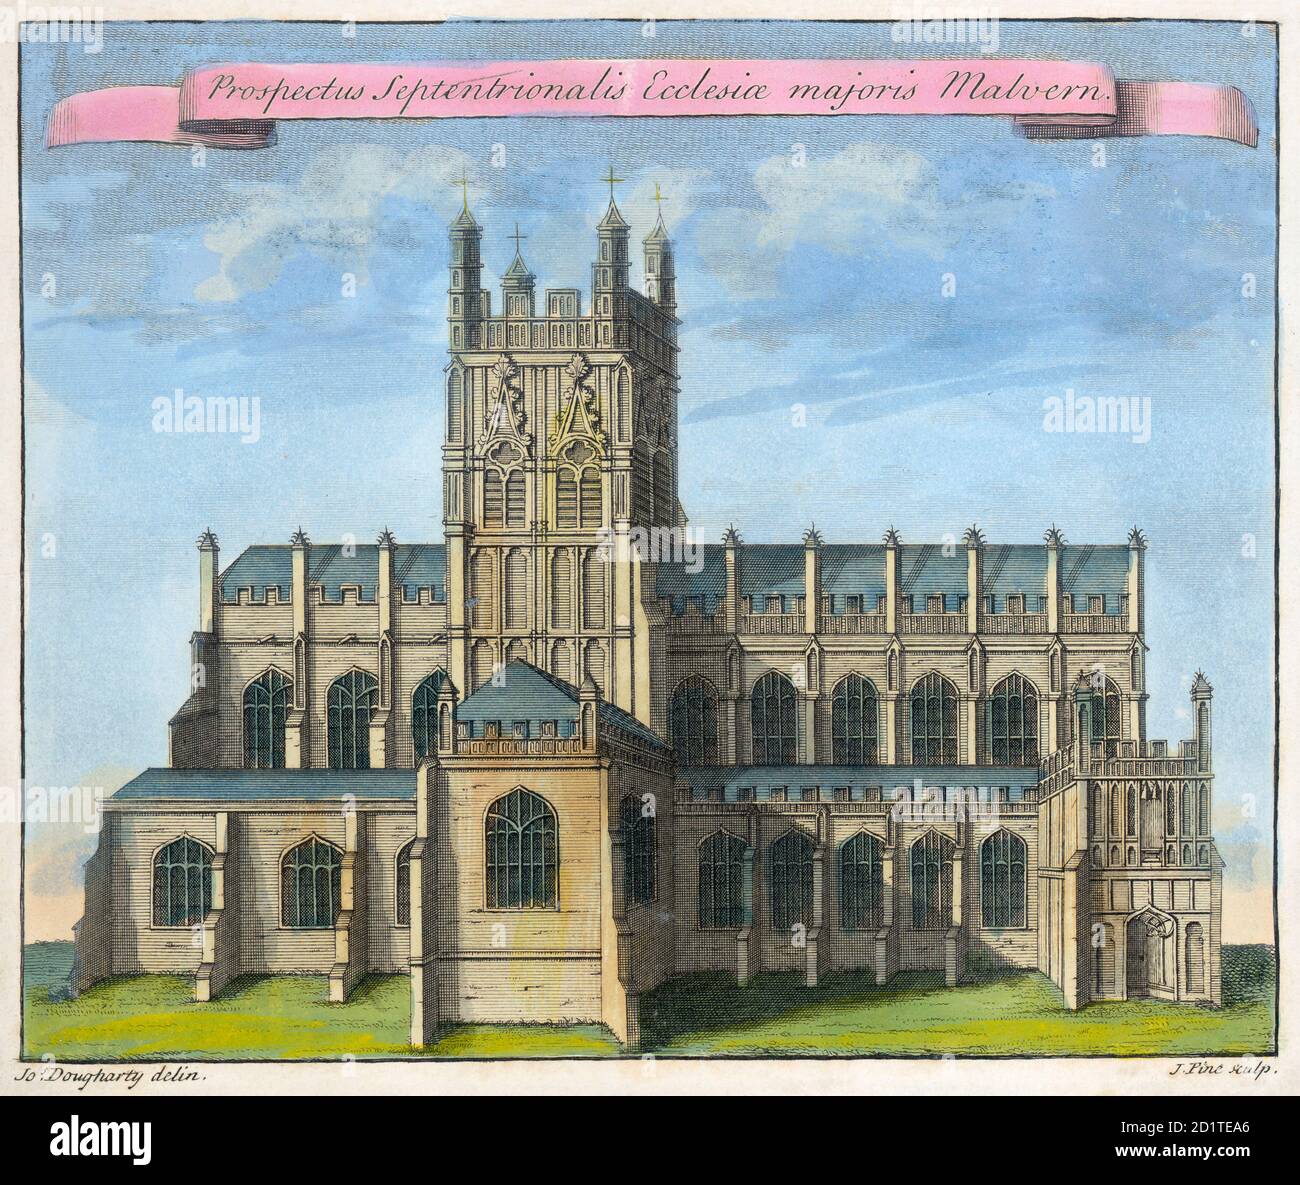 COLLEZIONE MAYSON BEETON. Great Malvern Priory, Worcestershire. 'Vista a nord della chiesa del Grande Malvern' di Joseph Dougharty. Incisione colorata in linea datata 1730. Foto Stock